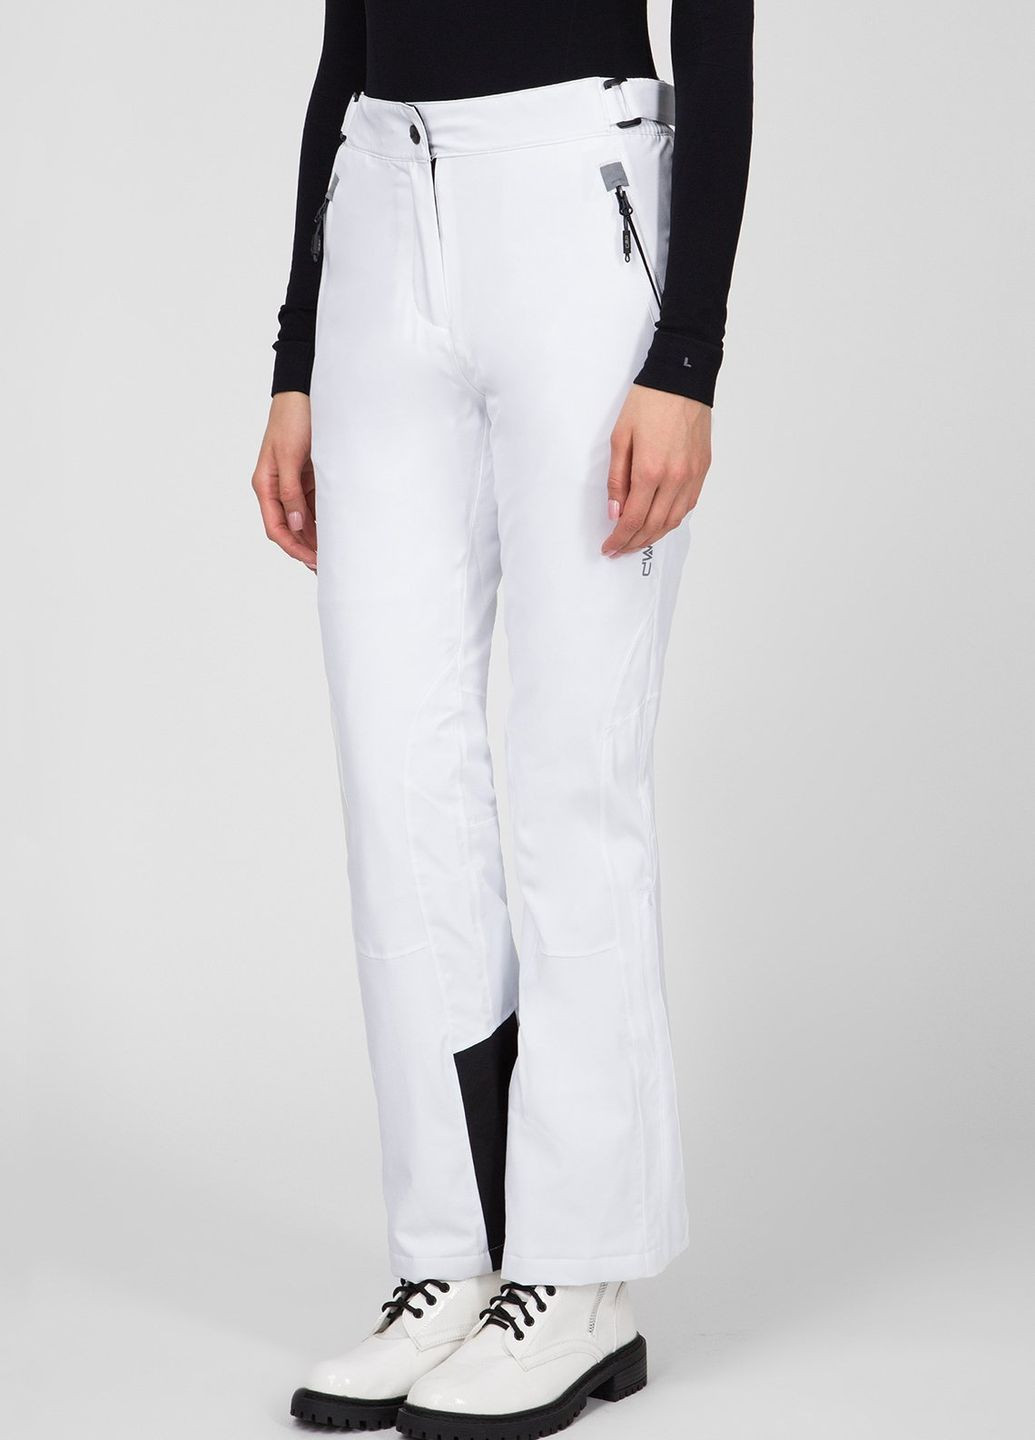 Белые горнолыжные брюки Woman Pant CMP (260760492)